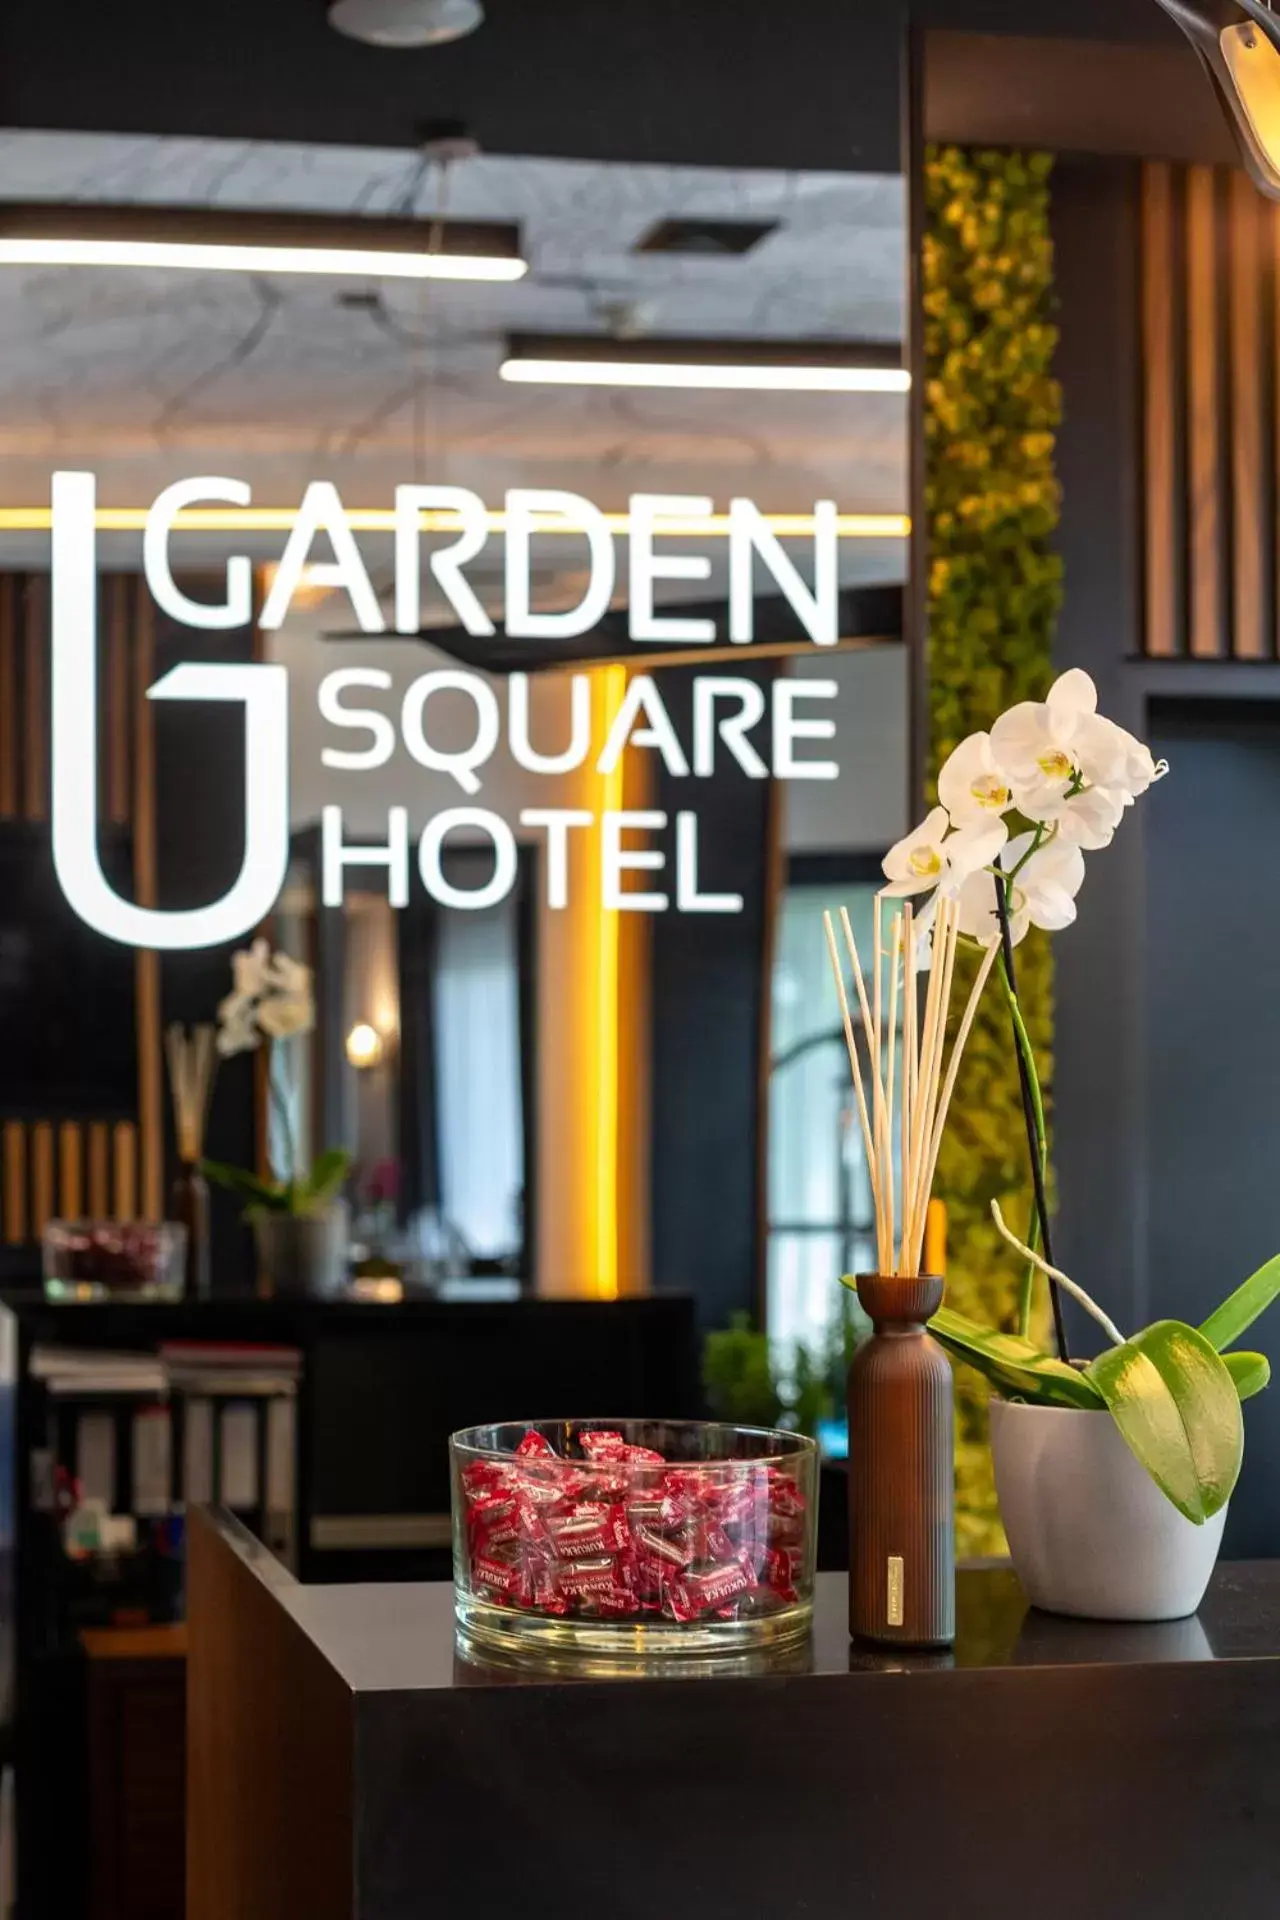 Garden Square Hotel